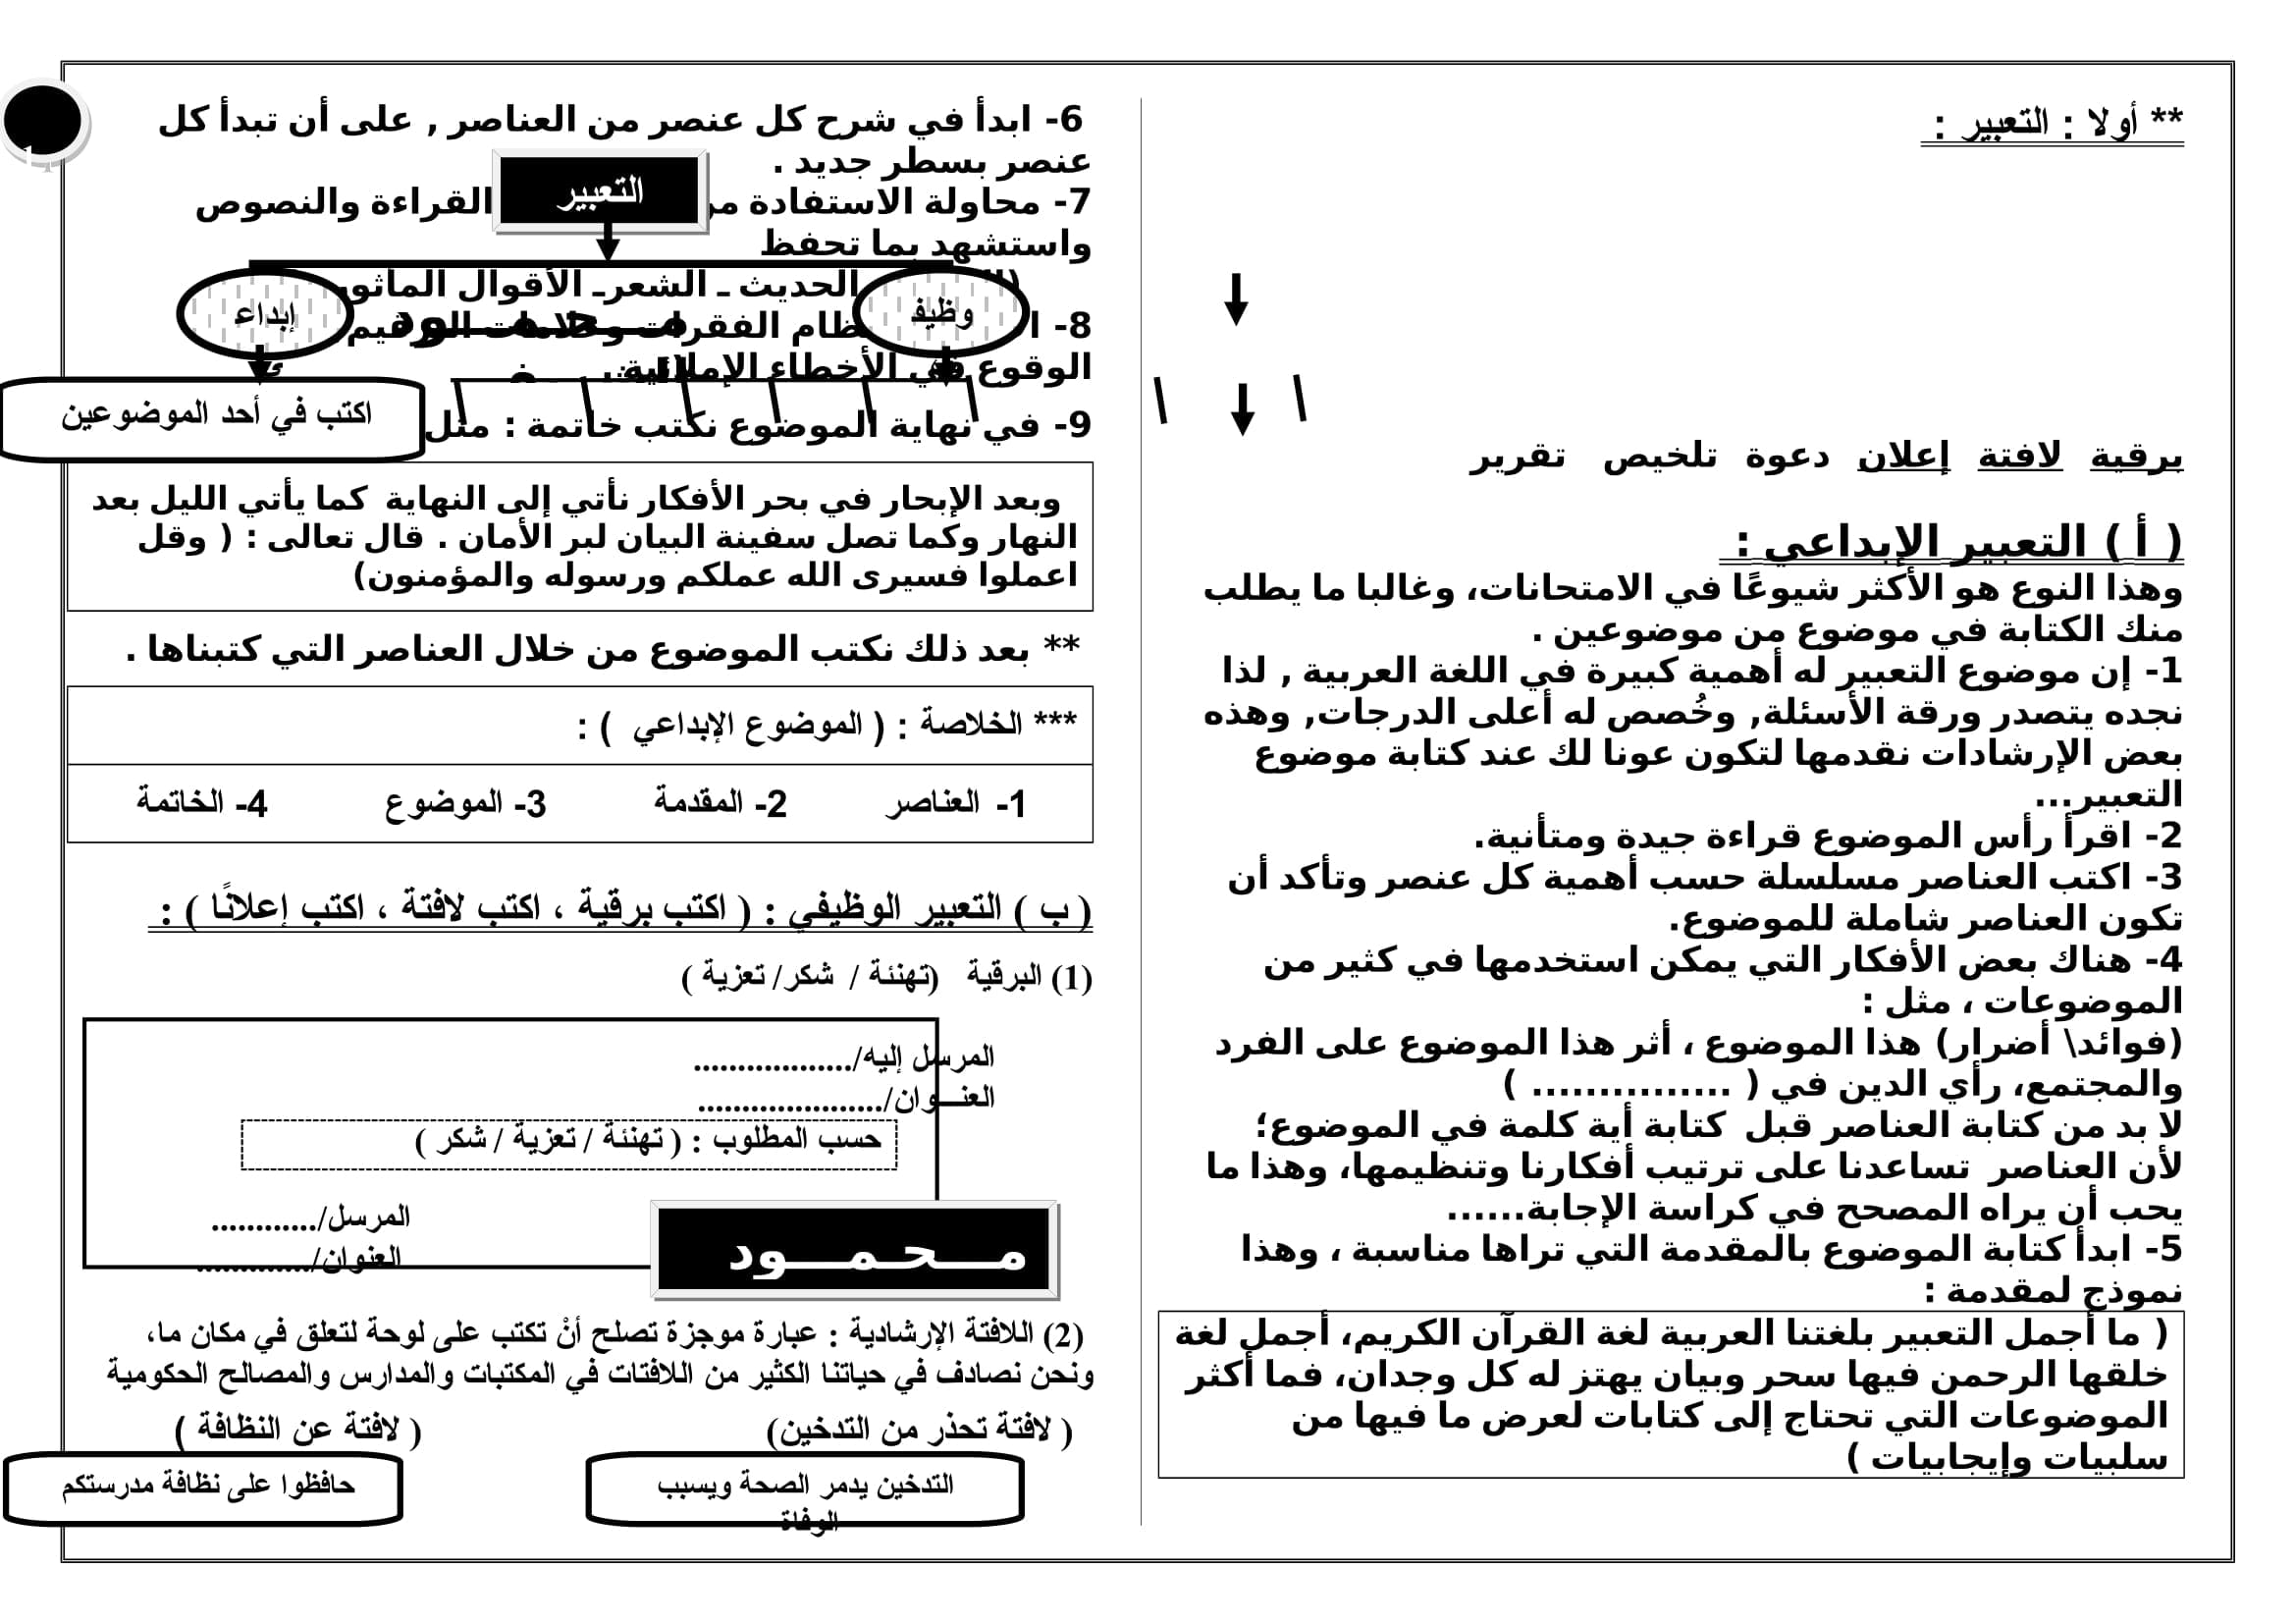 مذكرة تفاعلية في اللغة العربية للصف الأول الاعدادى الترم الثانى